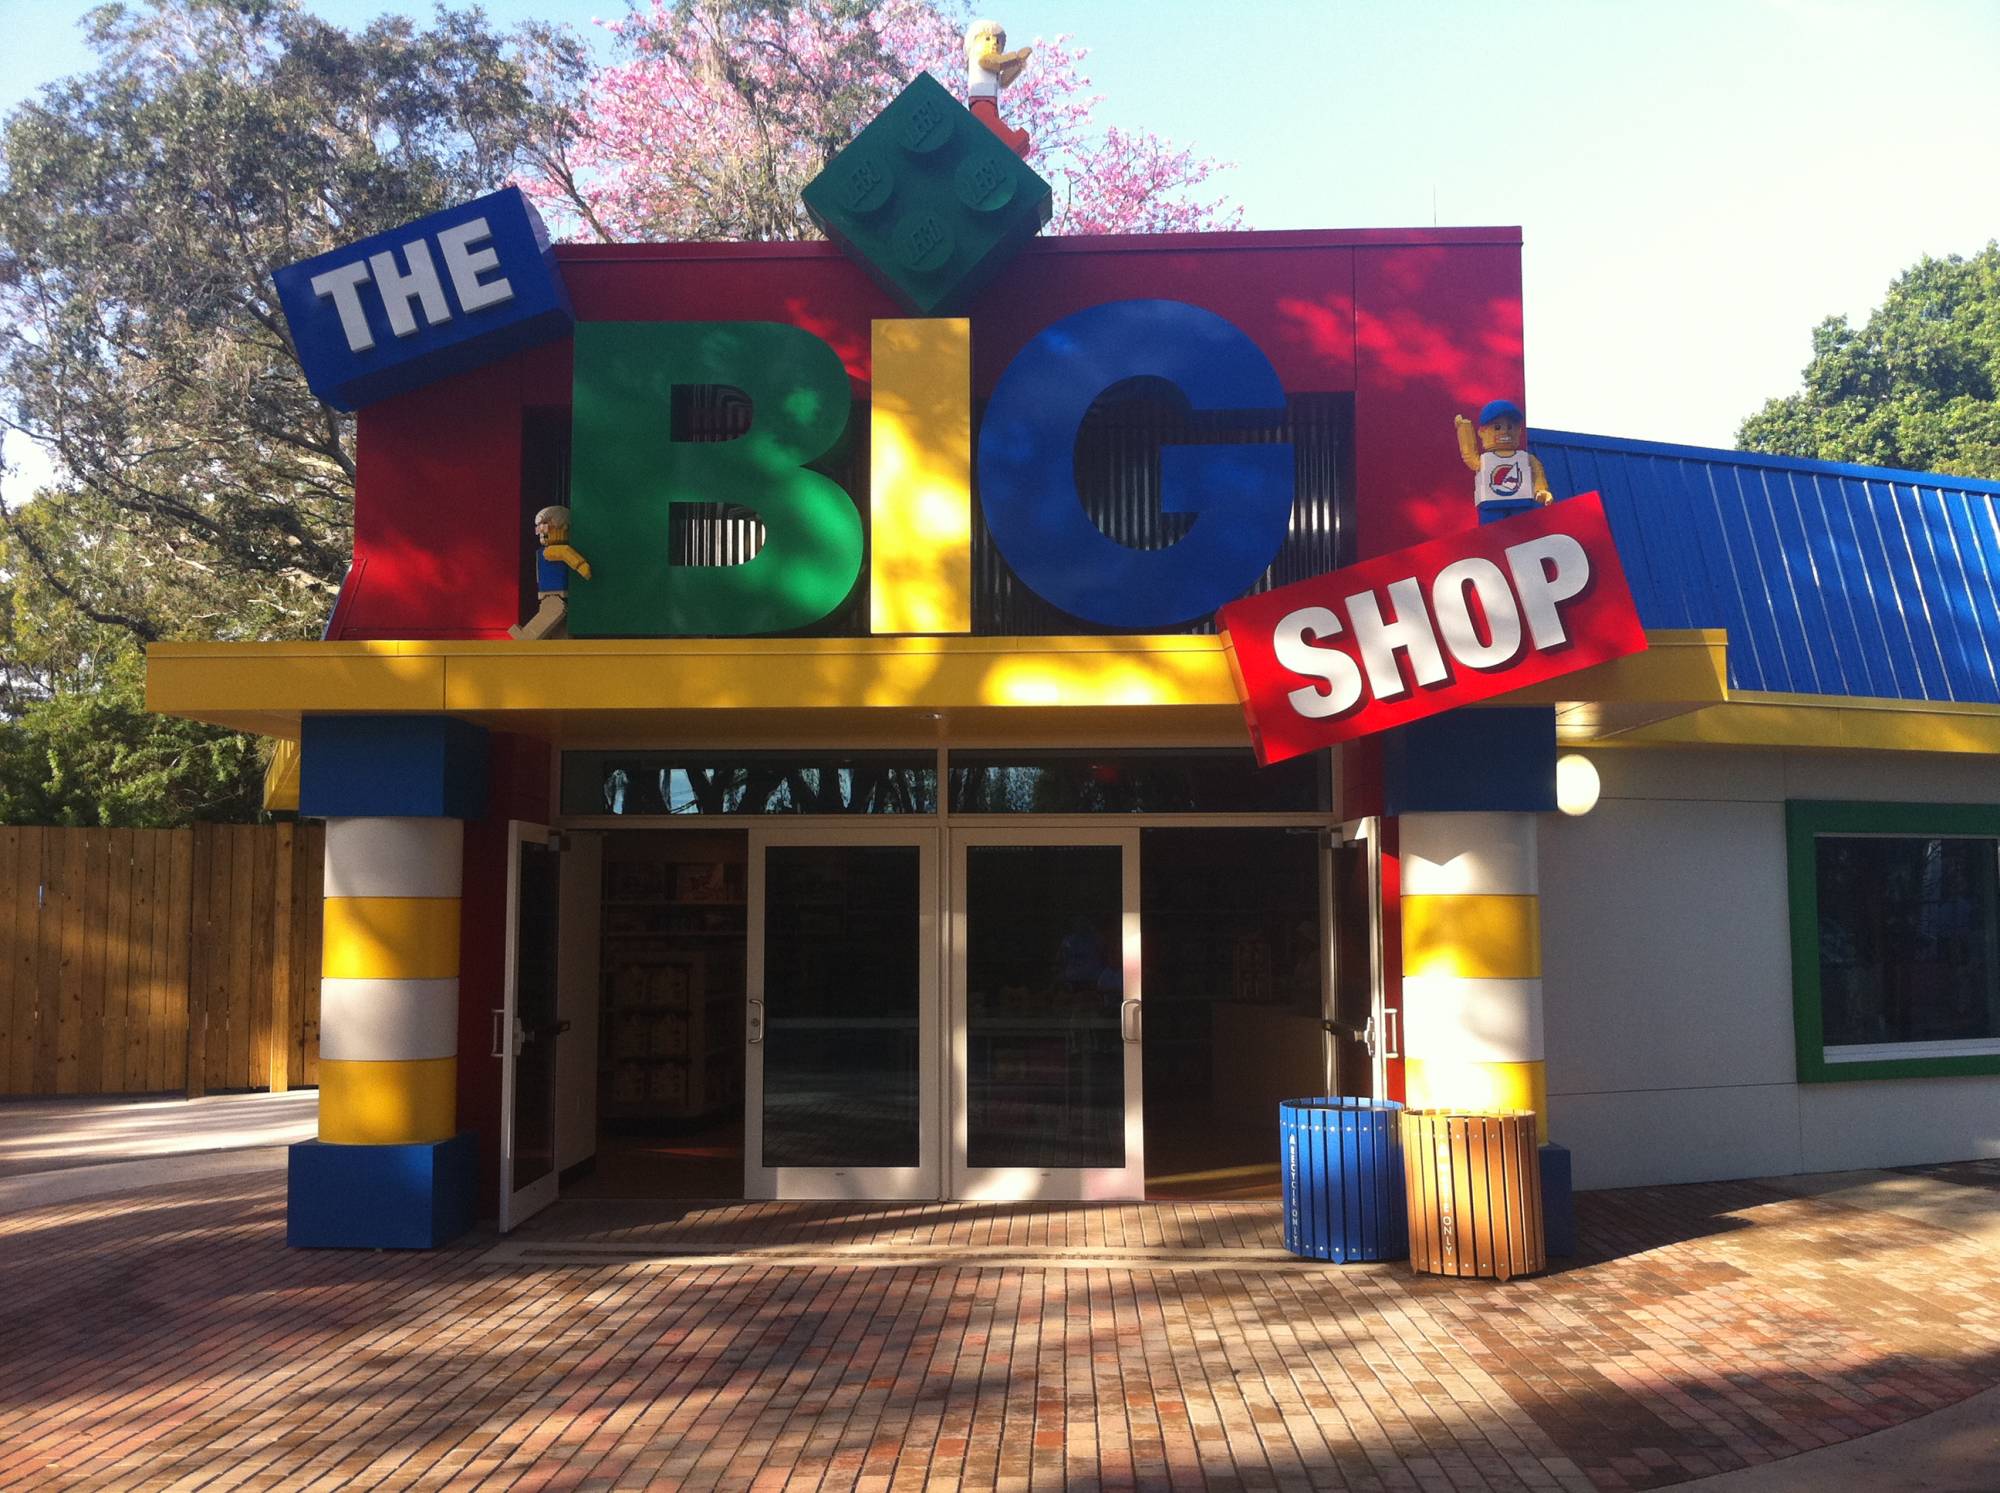 The Big Shop at LEGOLAND Florida